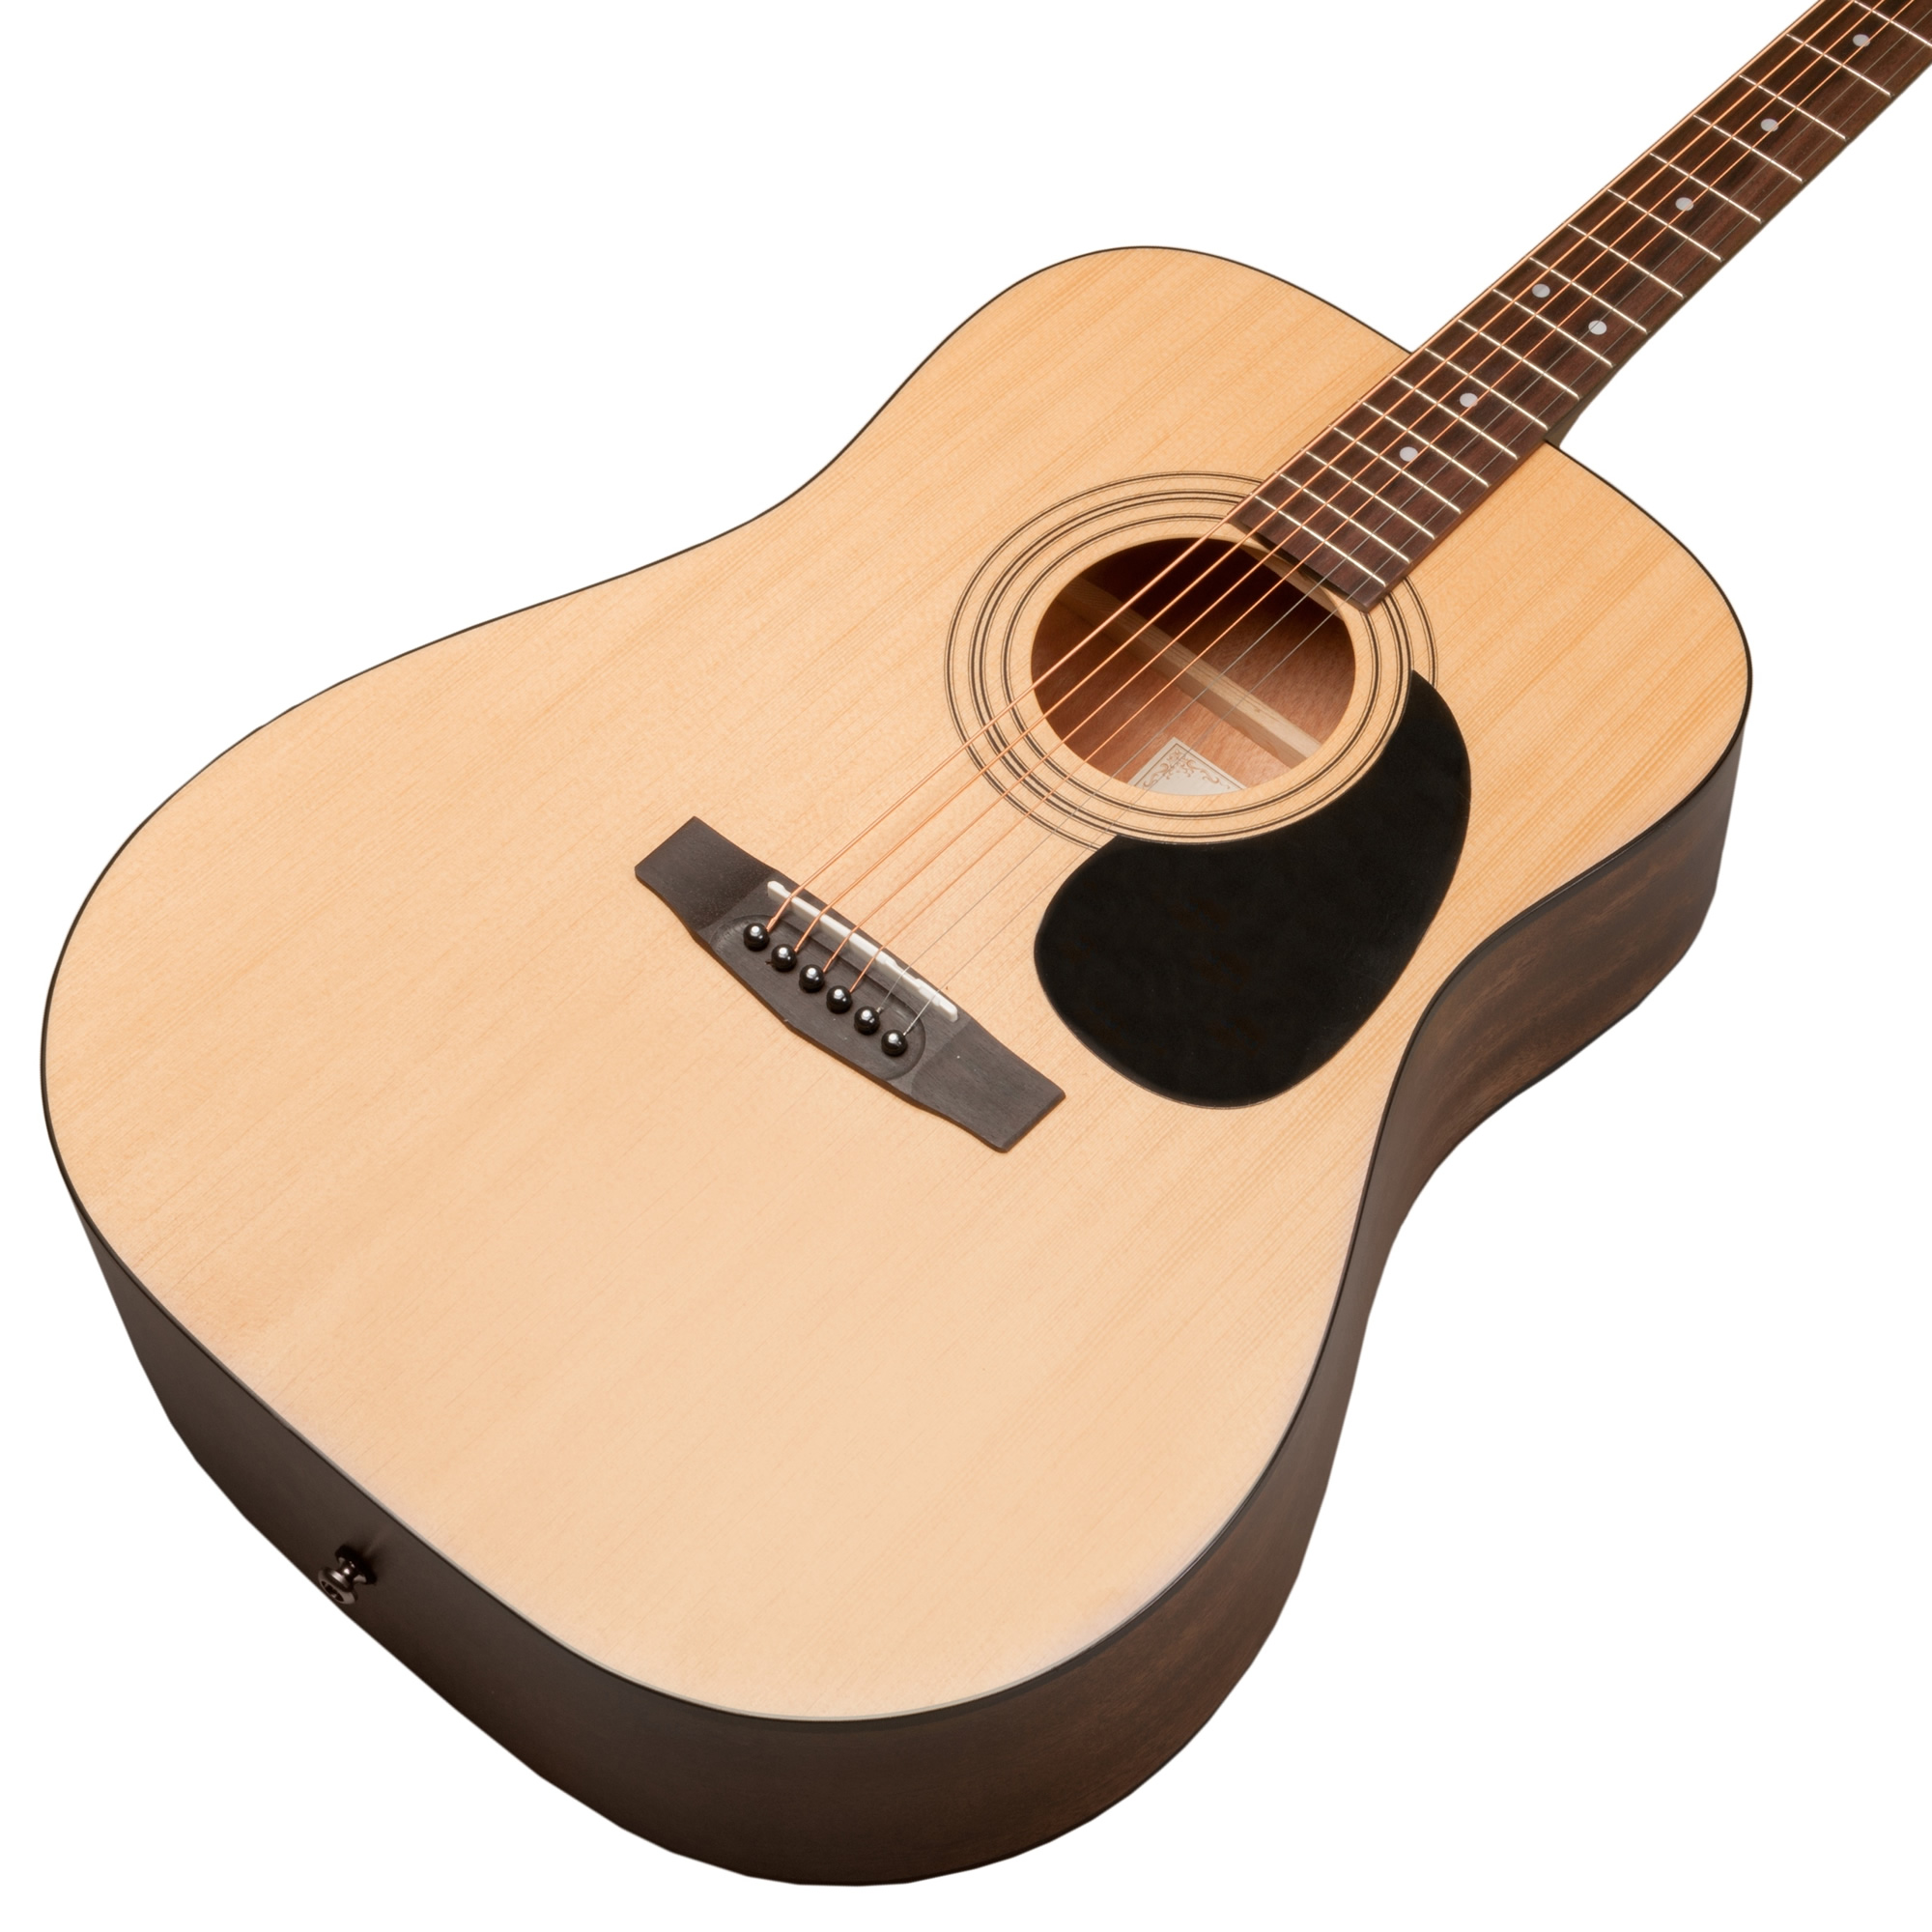 Limited Series アコースティックギター Y3